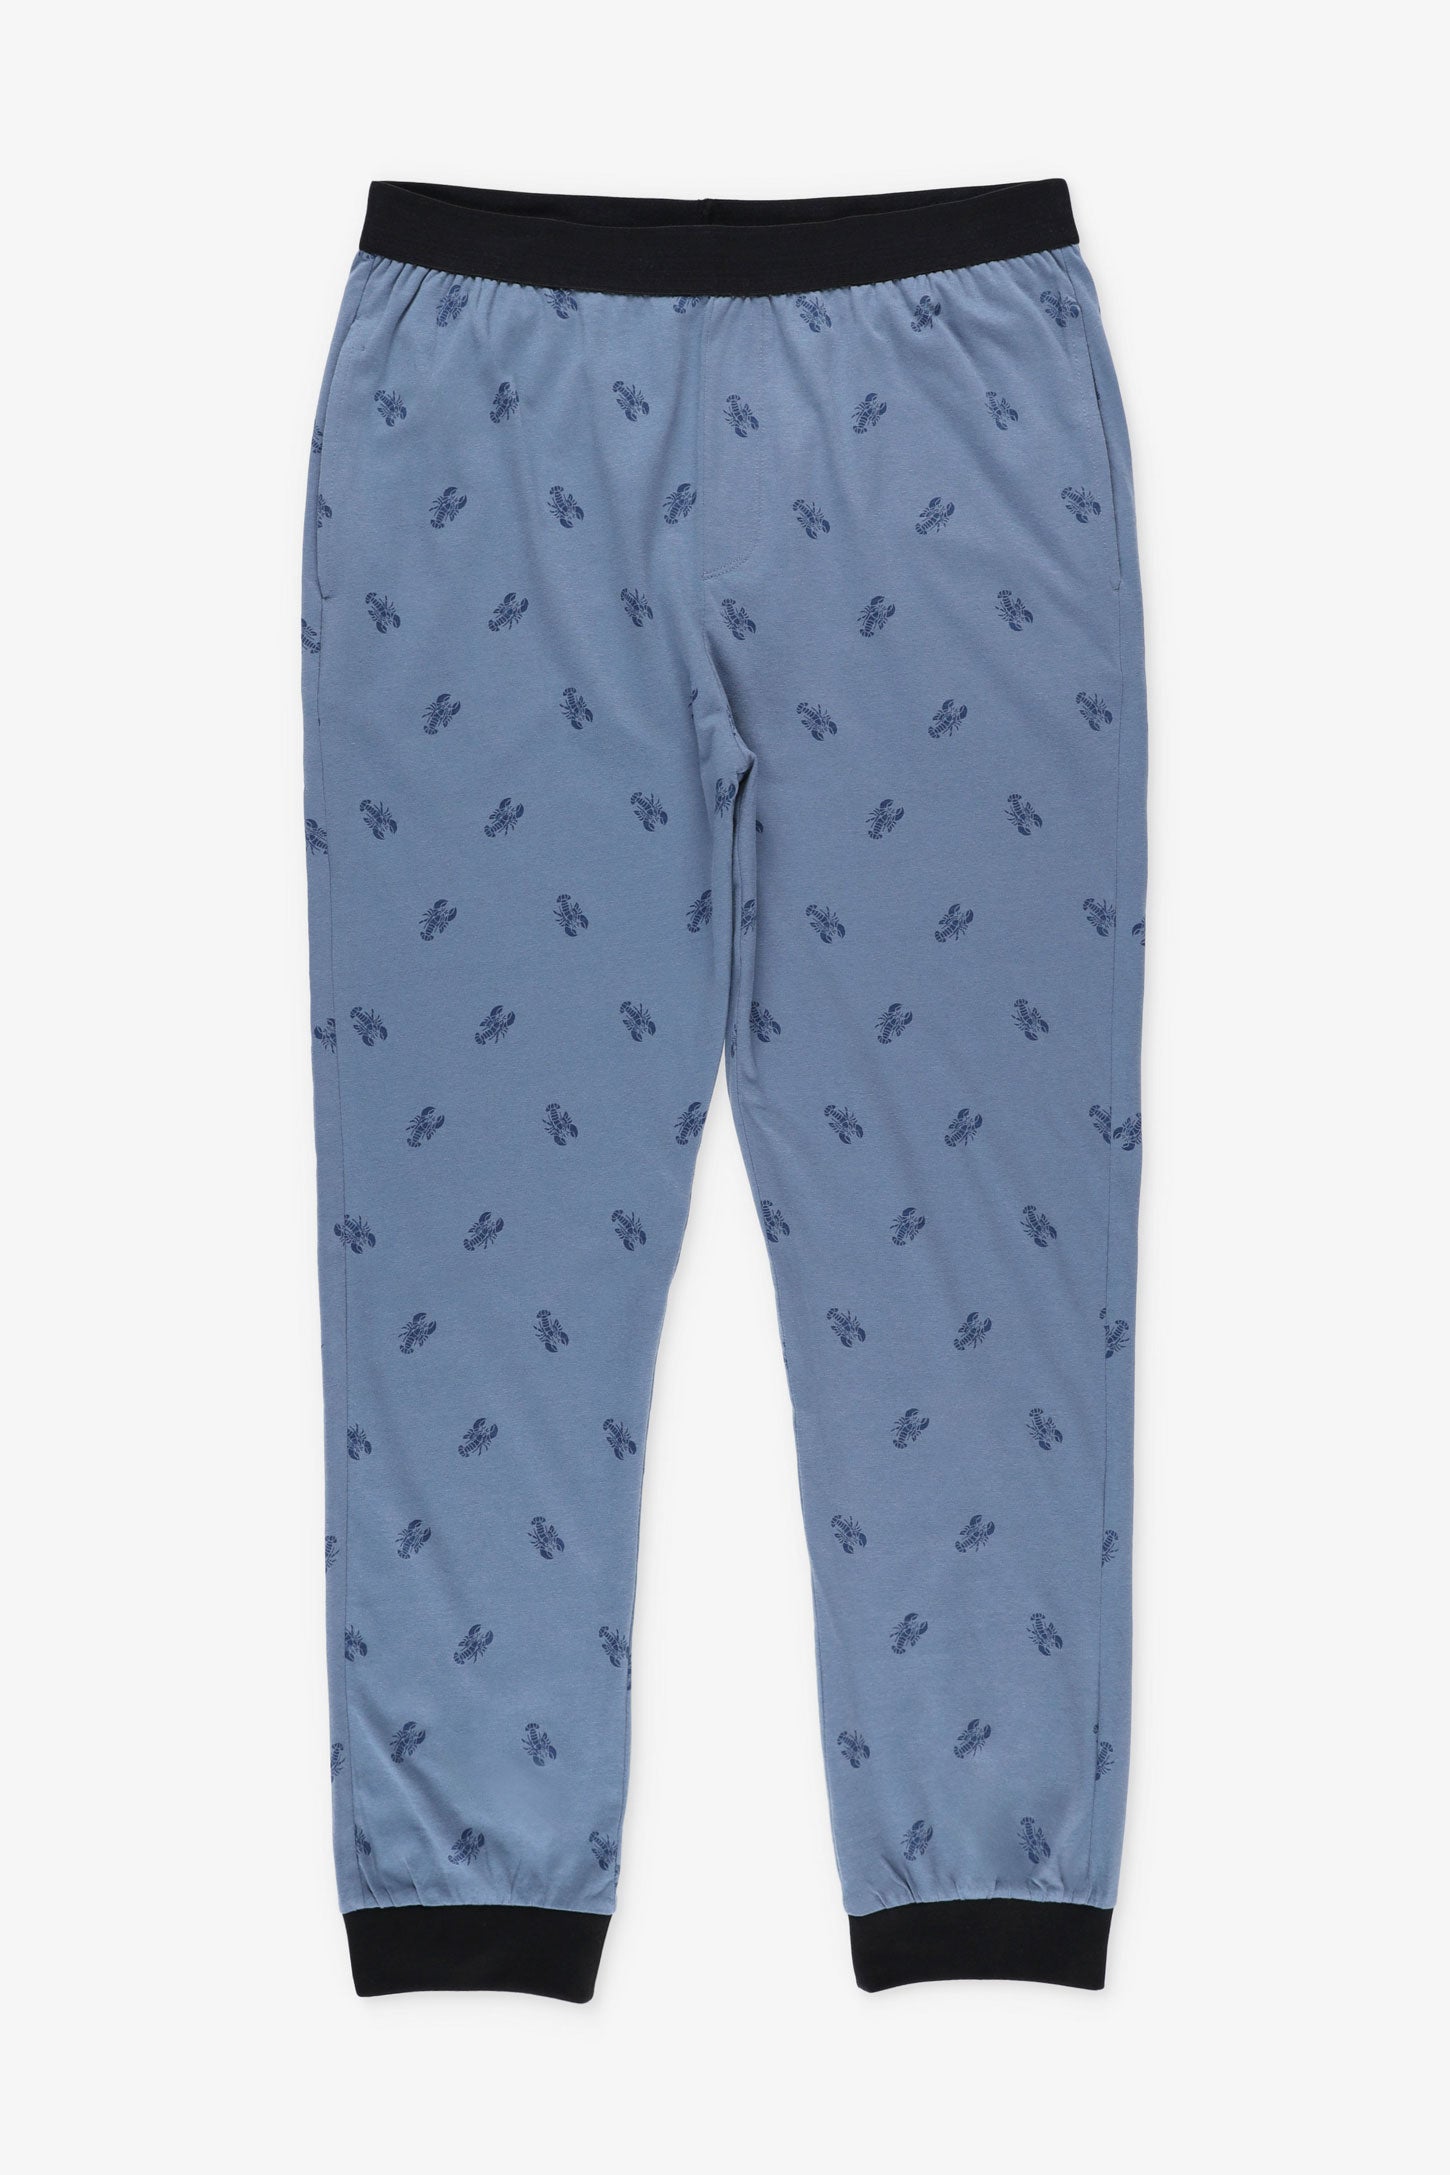 Pantalon pyjama en coton, 2/50$ - Homme && COMBO BLEU